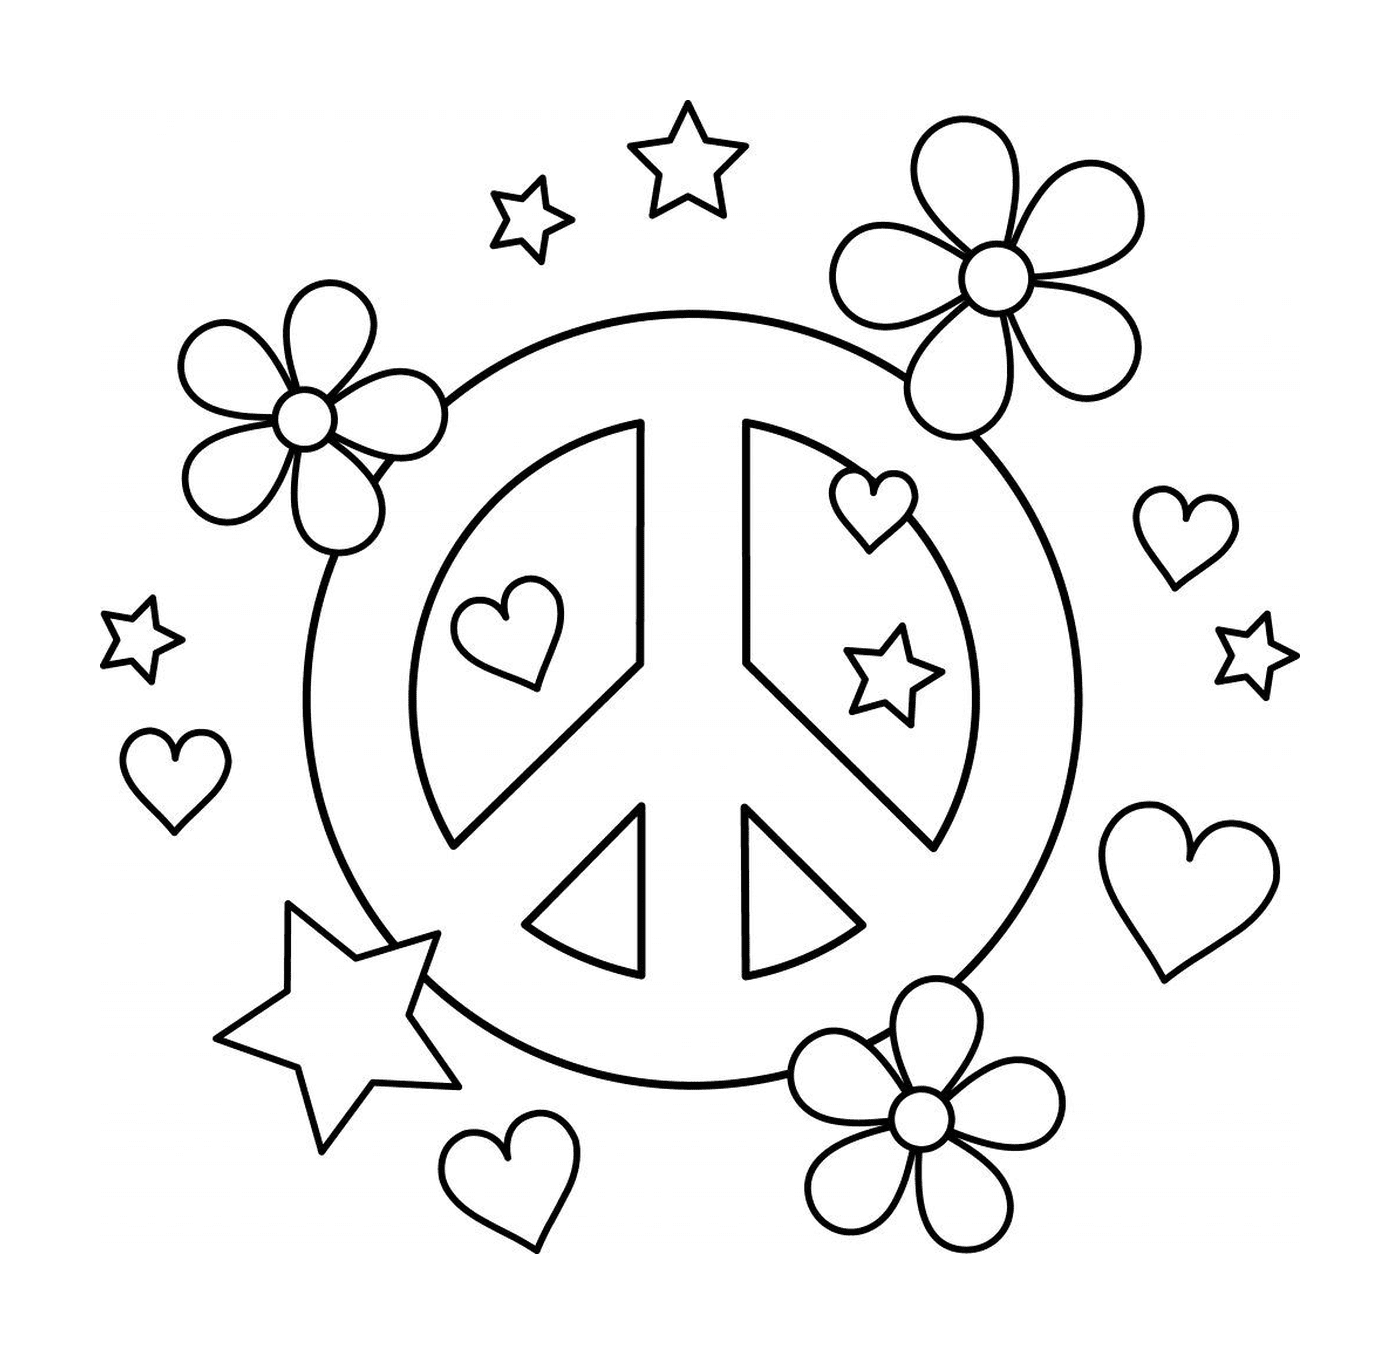  Simbolo della pace con cuori e fiori 